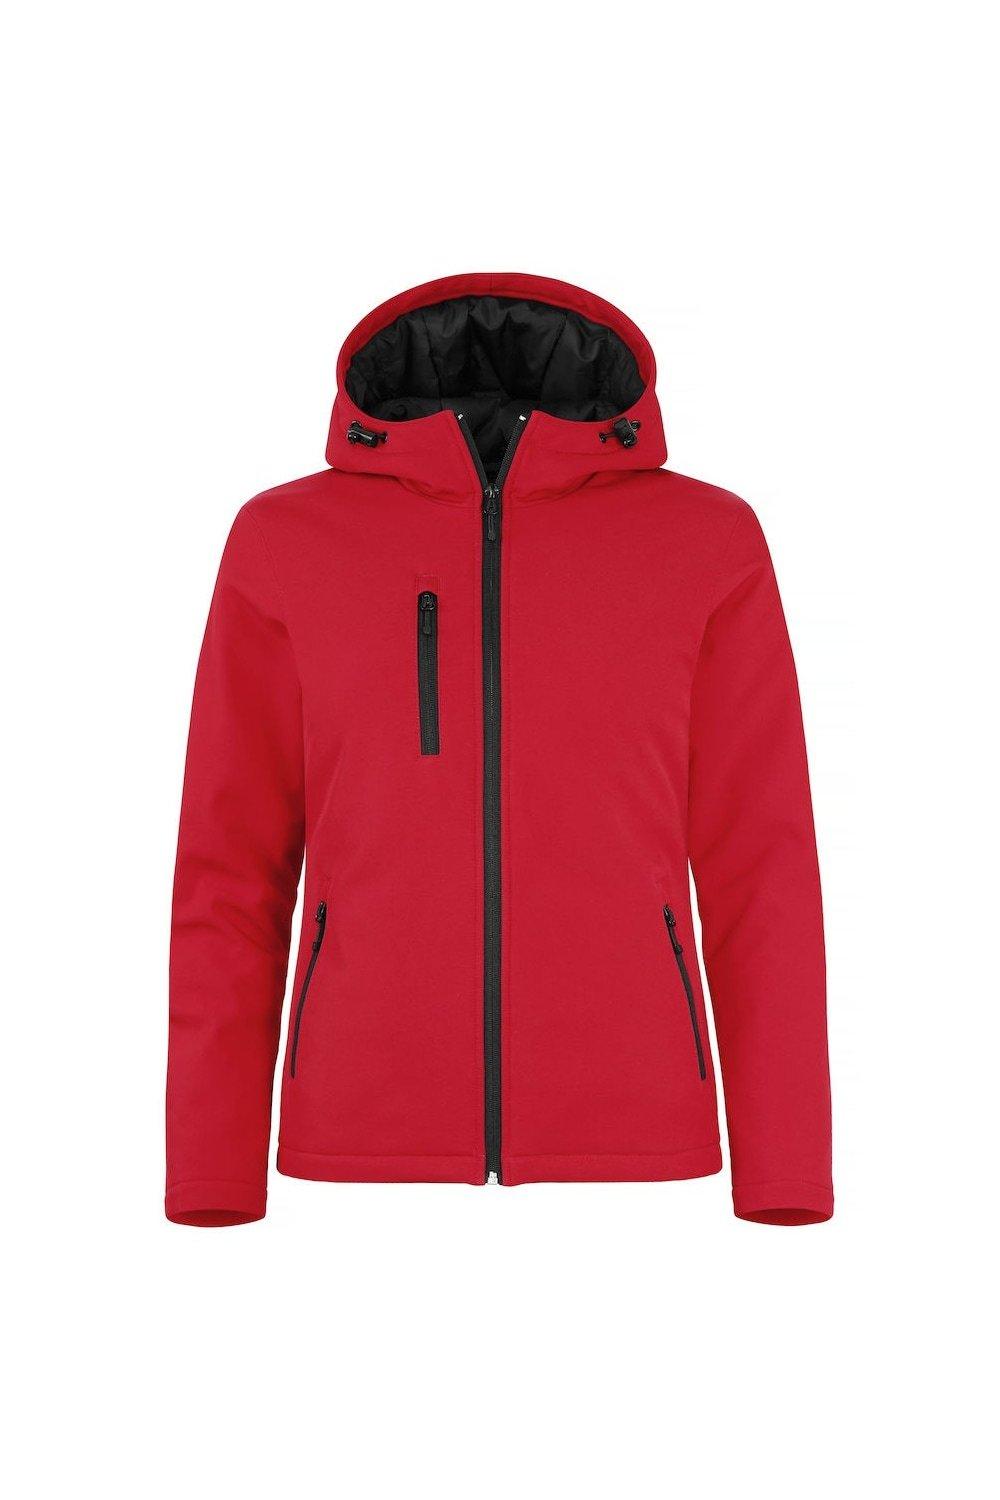 Утепленная куртка Soft Shell Clique, красный утепленная куртка core soft shell result красный